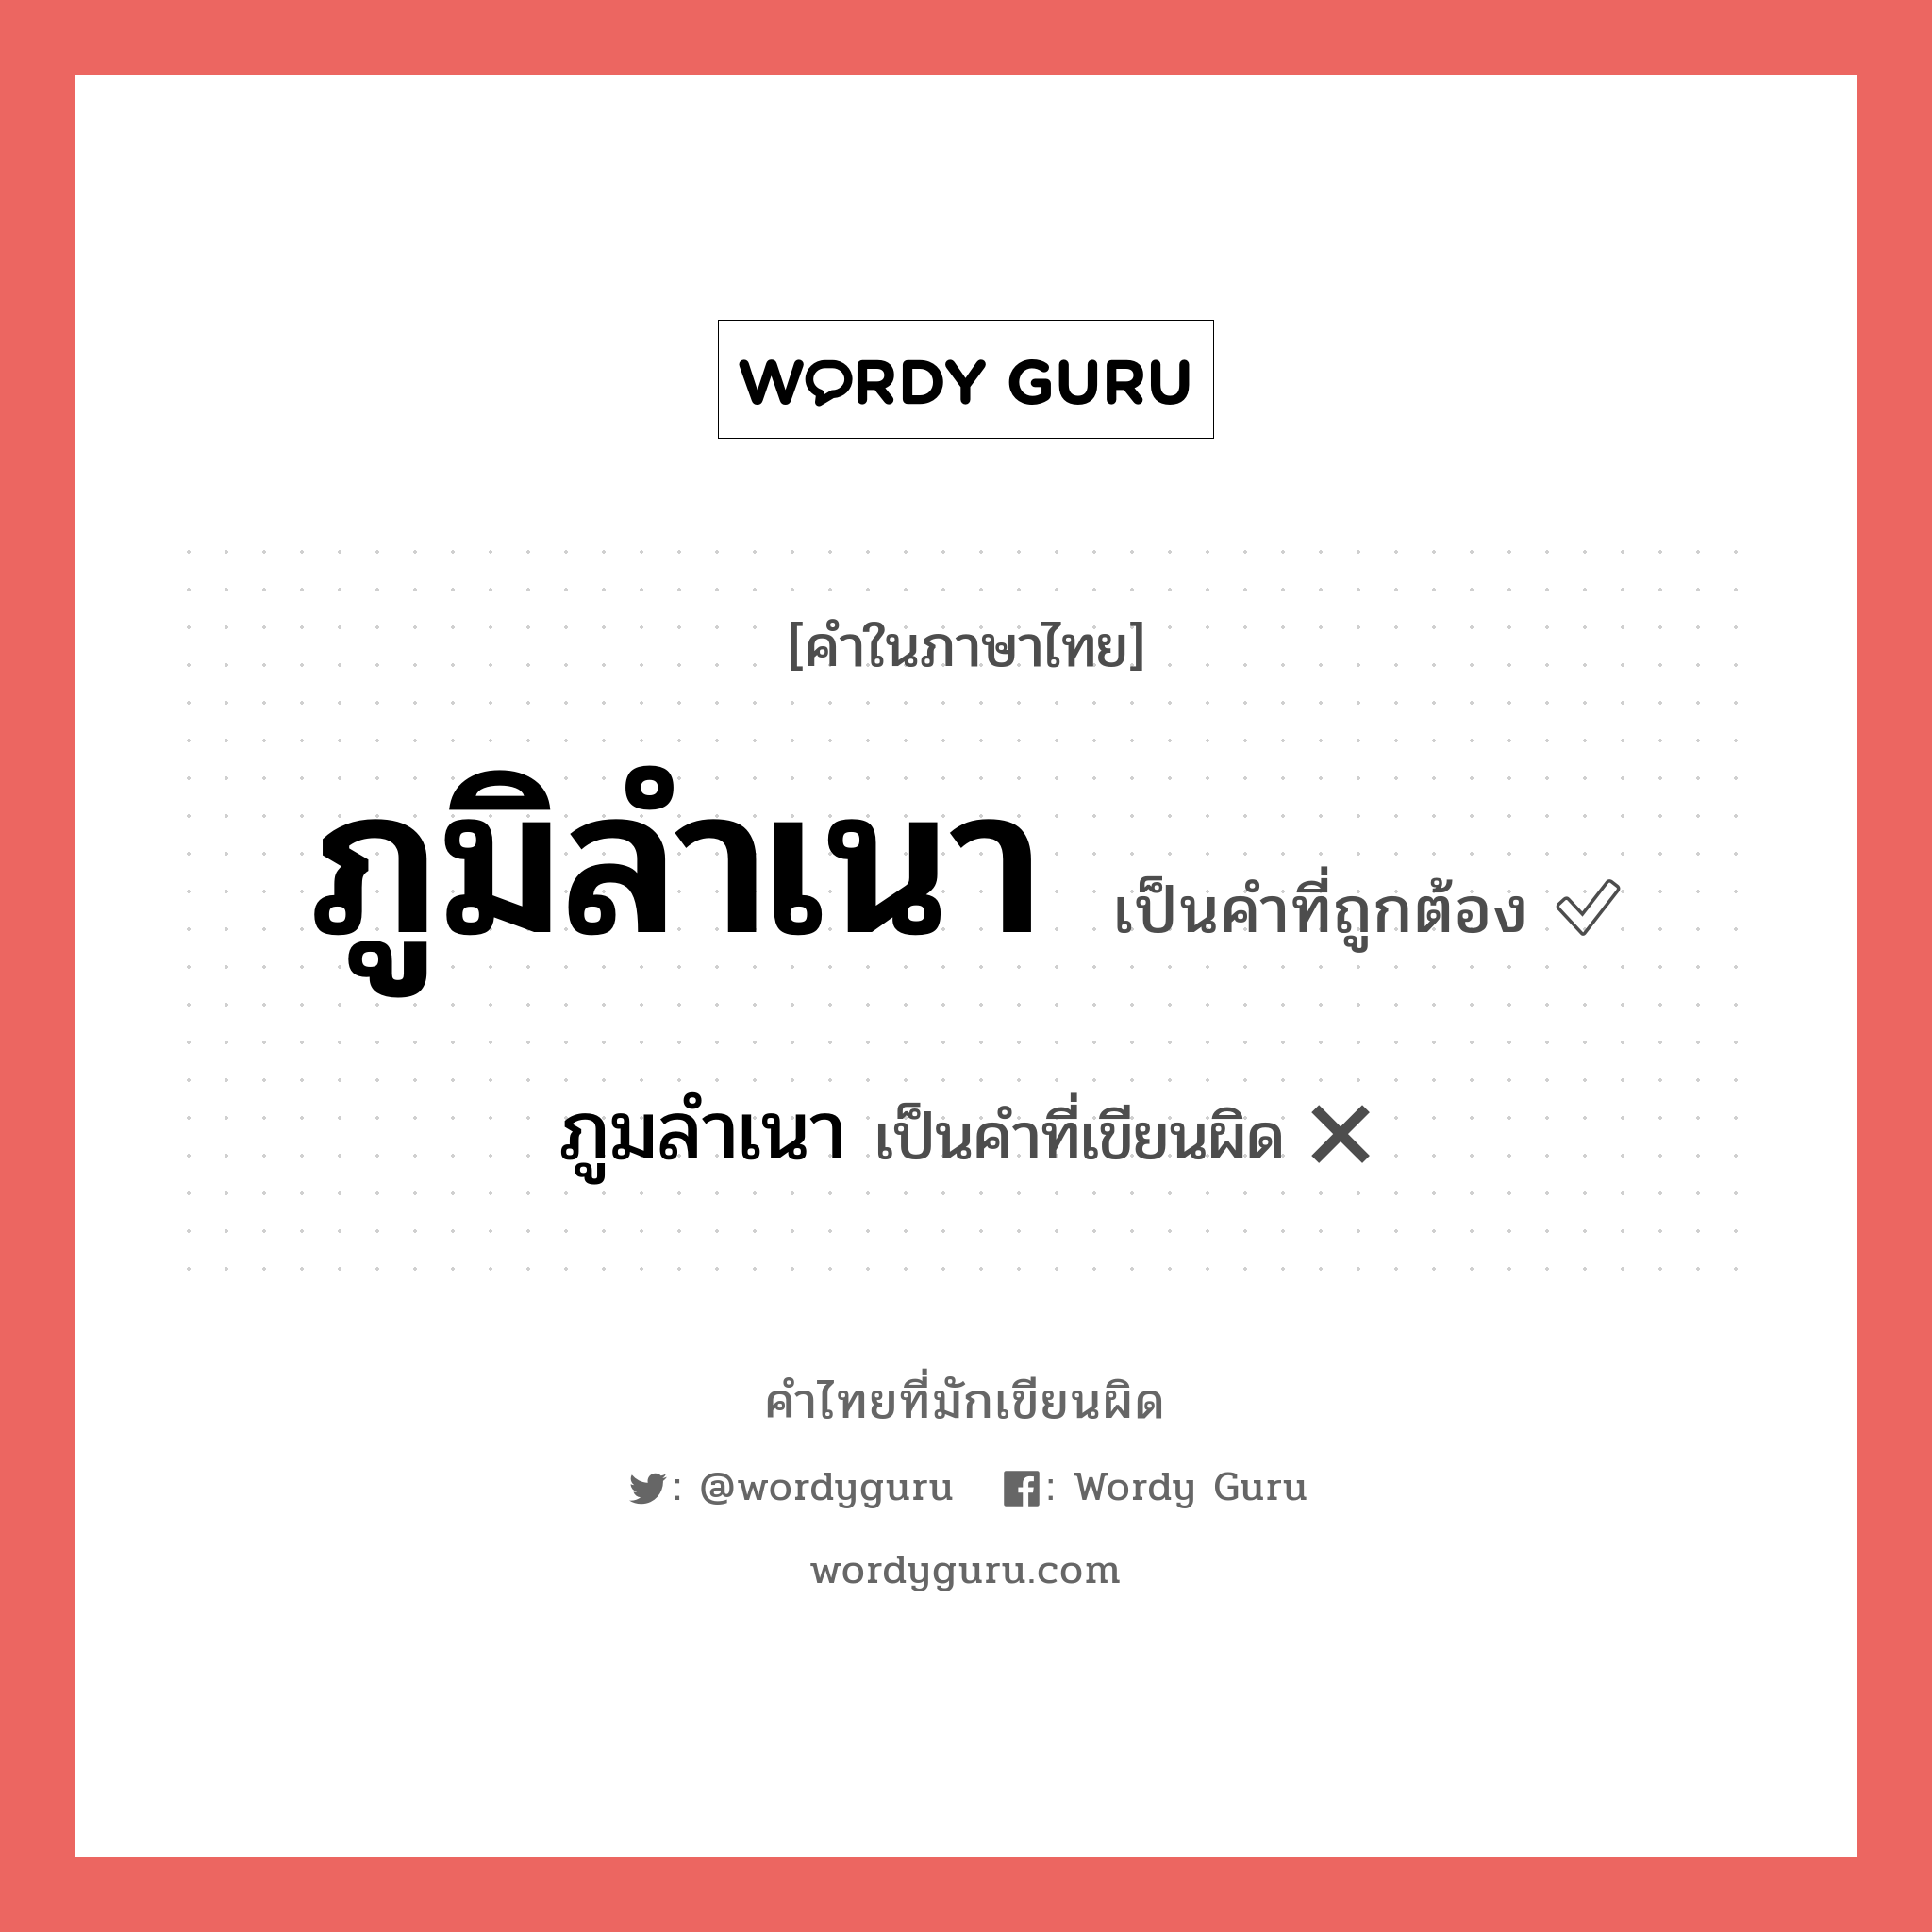 ภูมิลำเนา หรือ ภูมลำเนา คำไหนเขียนถูก?, คำในภาษาไทยที่มักเขียนผิด ภูมิลำเนา คำที่ผิด ❌ ภูมลำเนา